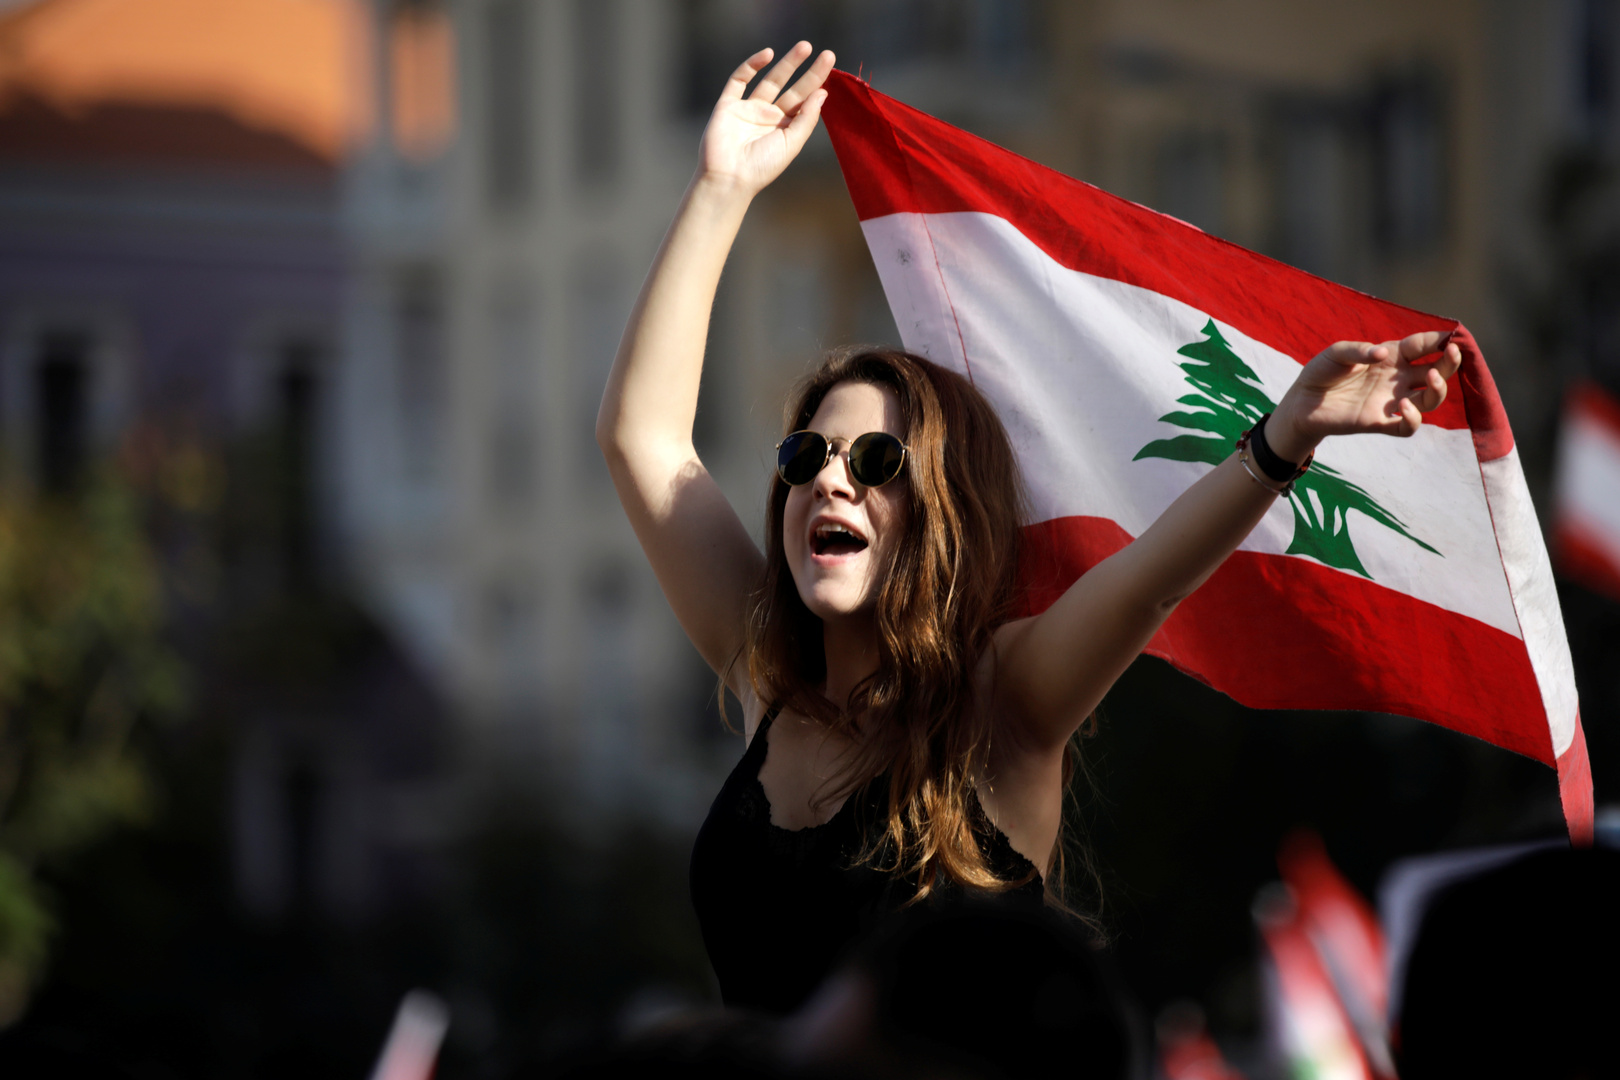 سيدات الحكومة اللبنانية الست.. جمال وثقافة (صور)